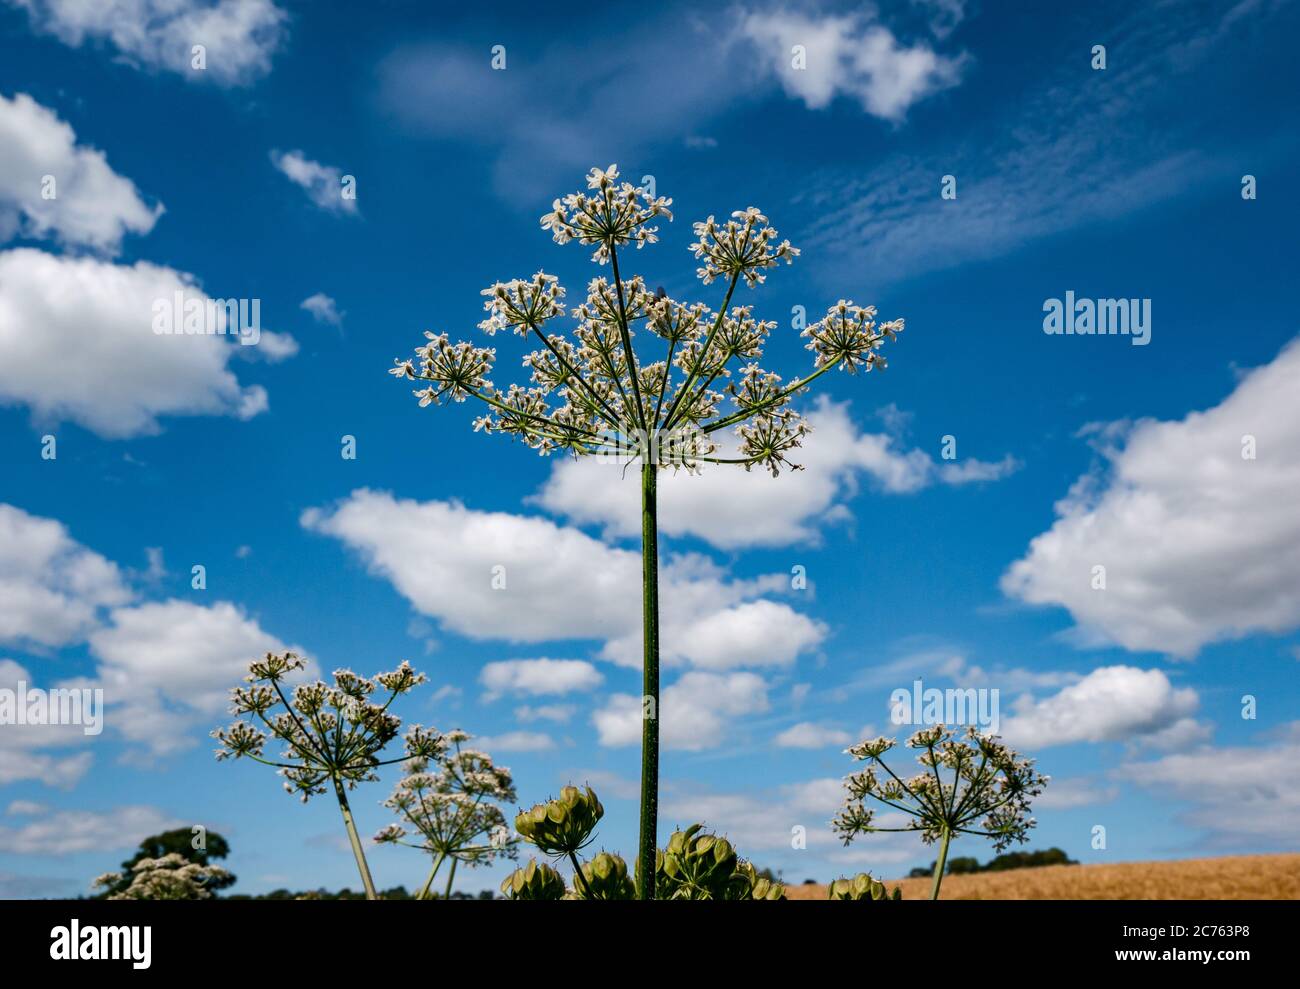 Prezzemolo di vacca, Anthrisco sylvestris, che cresce al sole d'estate contro un cielo azzurro soleggiato, Lothian orientale, Scozia, Regno Unito Foto Stock